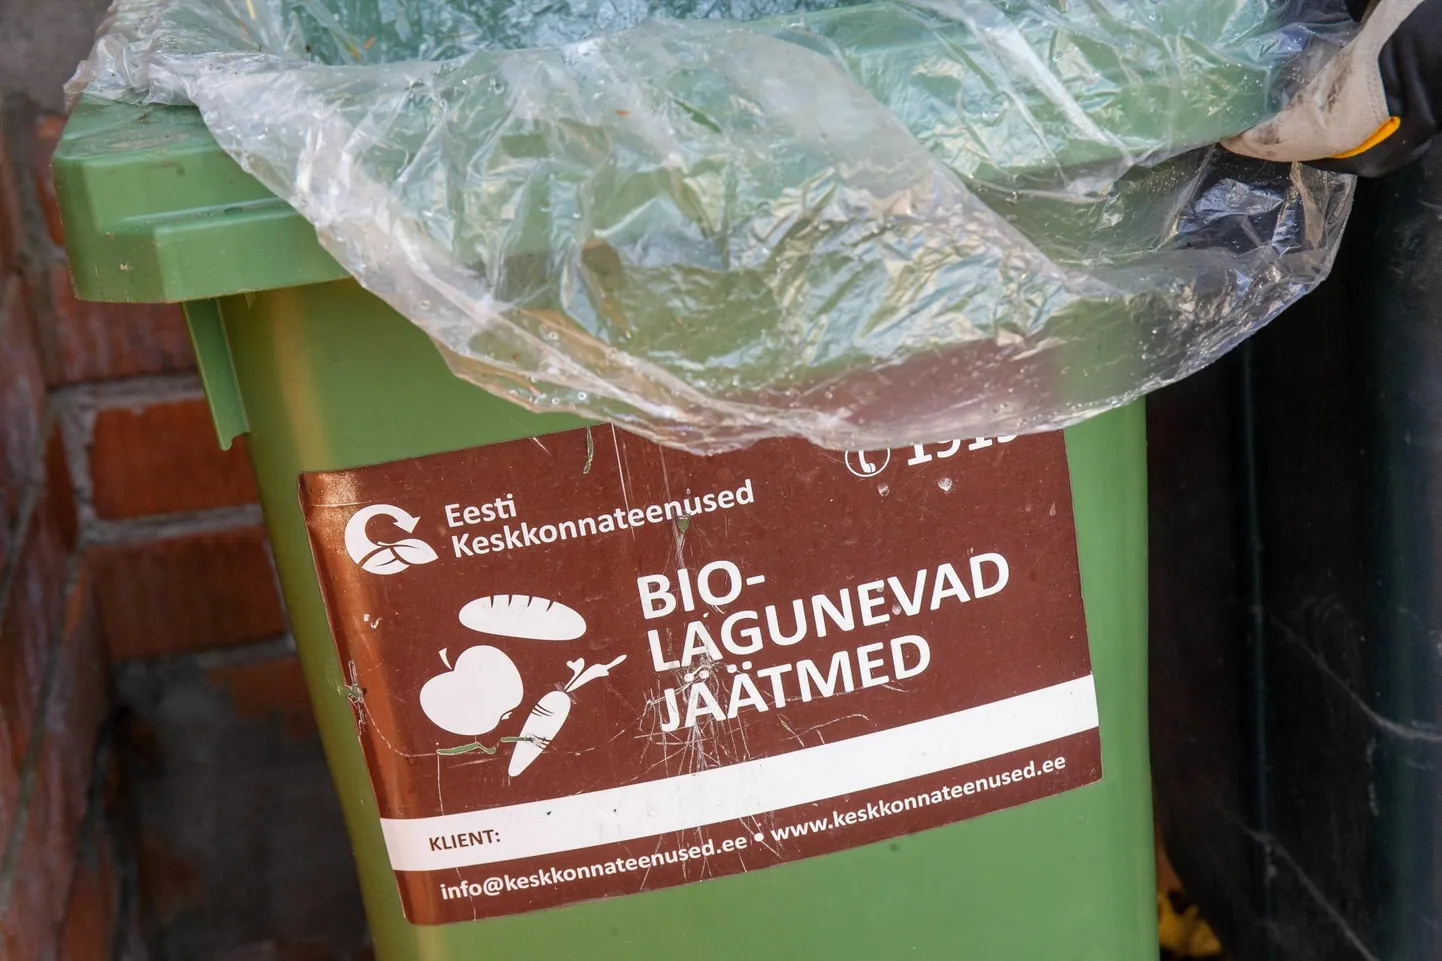 Biolagunevate jäätmete konteiner. Pilt illustratiivne